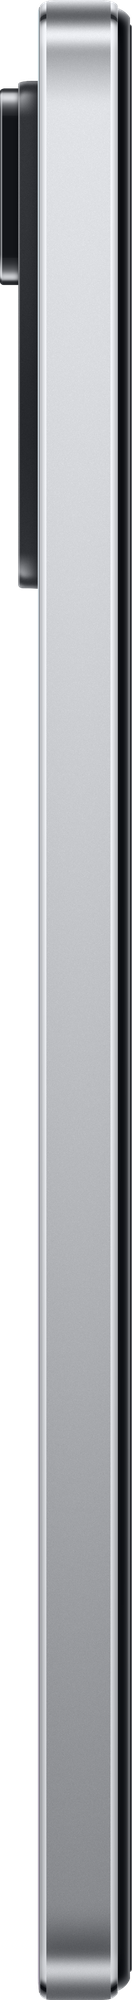 Смартфон Xiaomi - фото №20